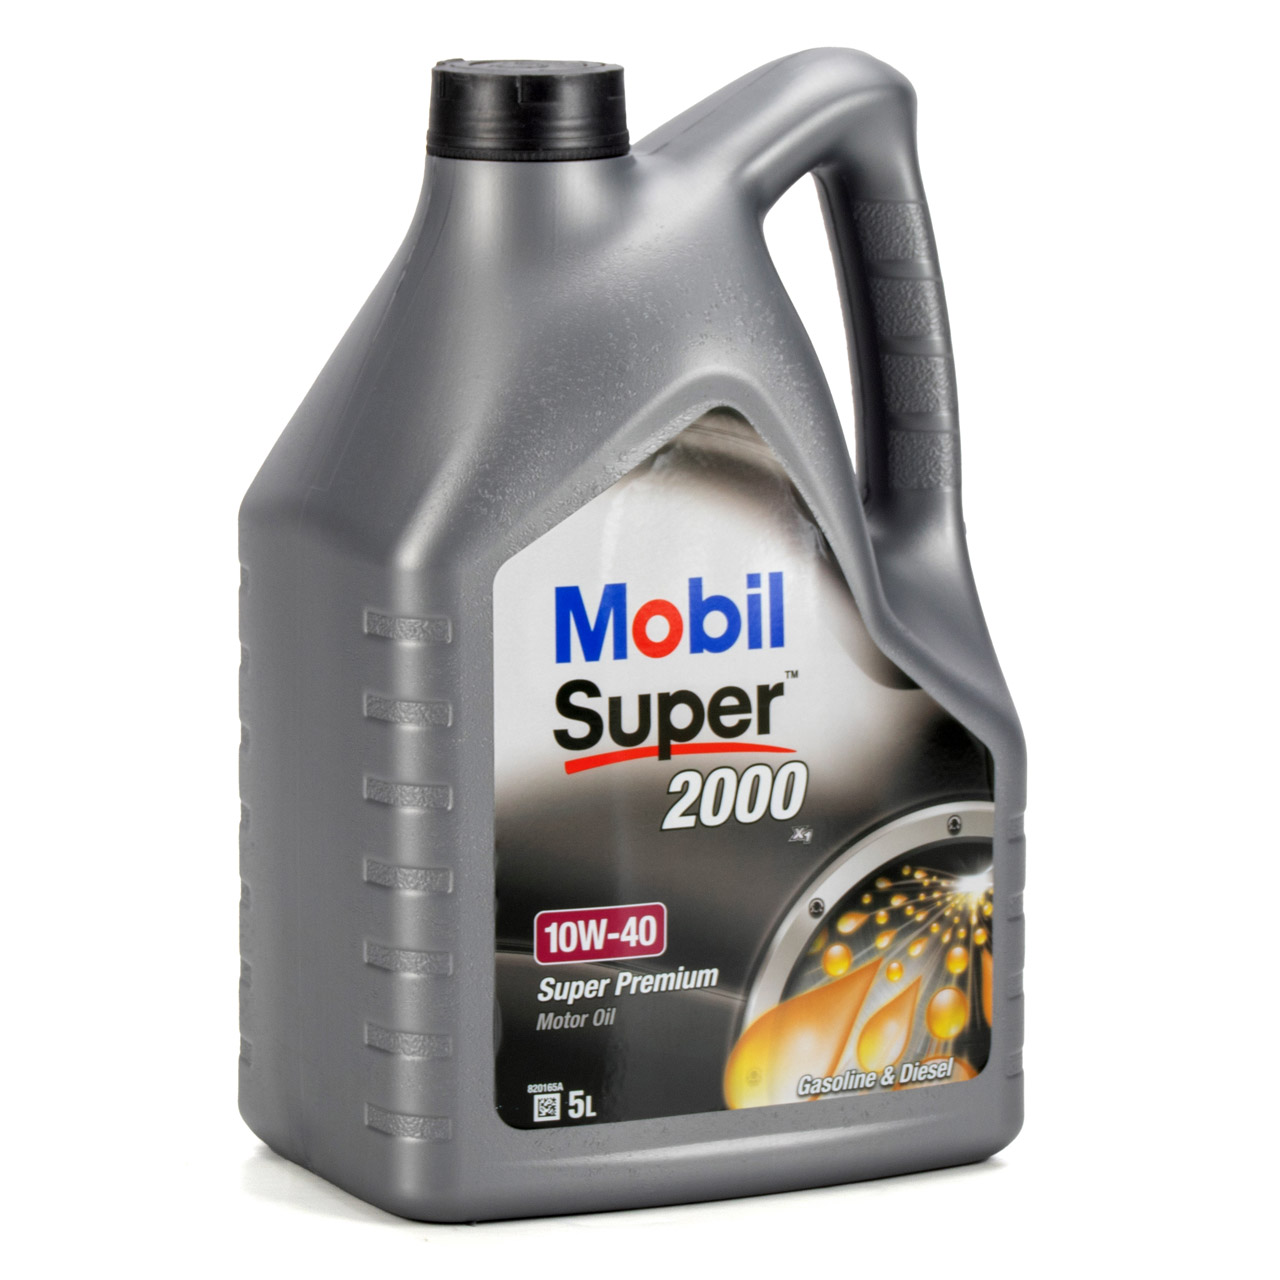 Mobil SUPER 2000 X1 10W40 Super Premium Motoröl Öl VW 501.01/505.00 - 5L 5 Liter